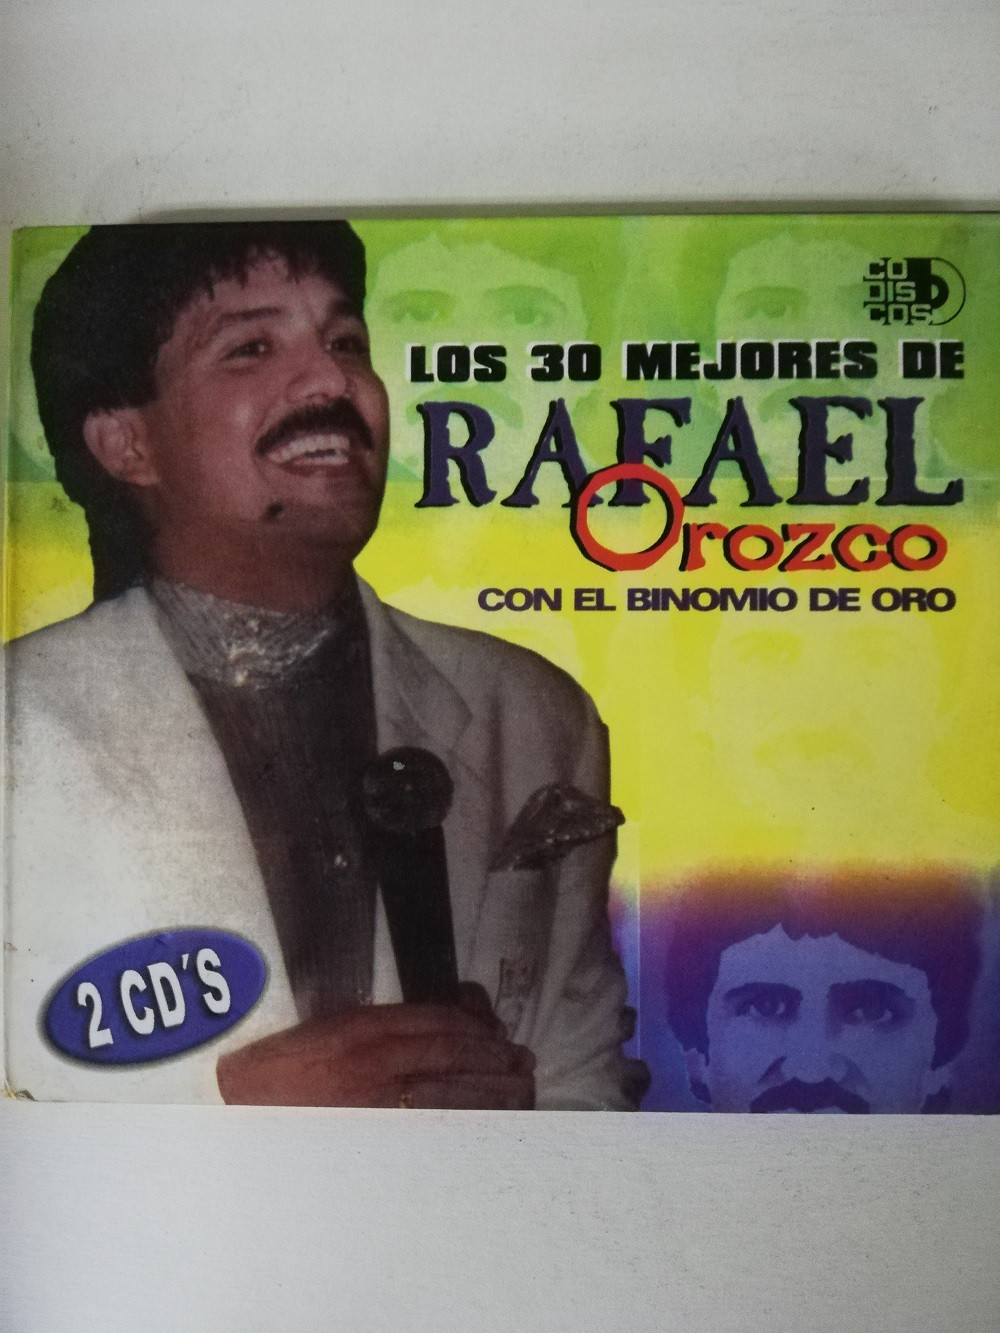 Imagen CD X 2 RAFAEL OROZCO CON EL BINOMIO DE ORO - LOS 30 MEJORES 1